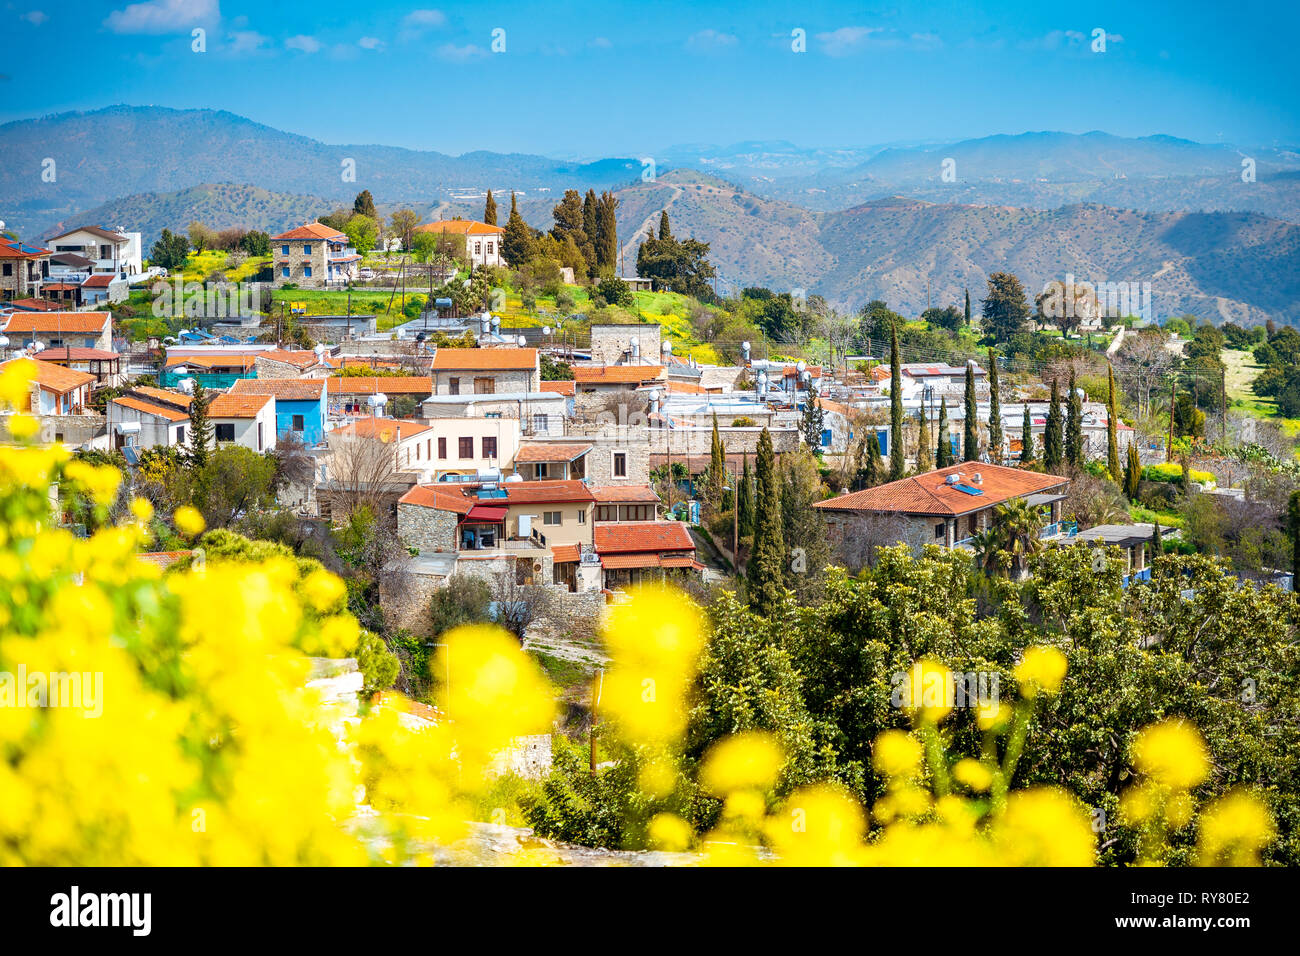 Herrliche Aussicht auf den berühmten Wahrzeichen Reiseziel tal Pano Lefkara Dorf, Larnaca, Zypern durch keramische Fliesen- Haus Dächer und Griechisch-orthodoxen bekannt Stockfoto